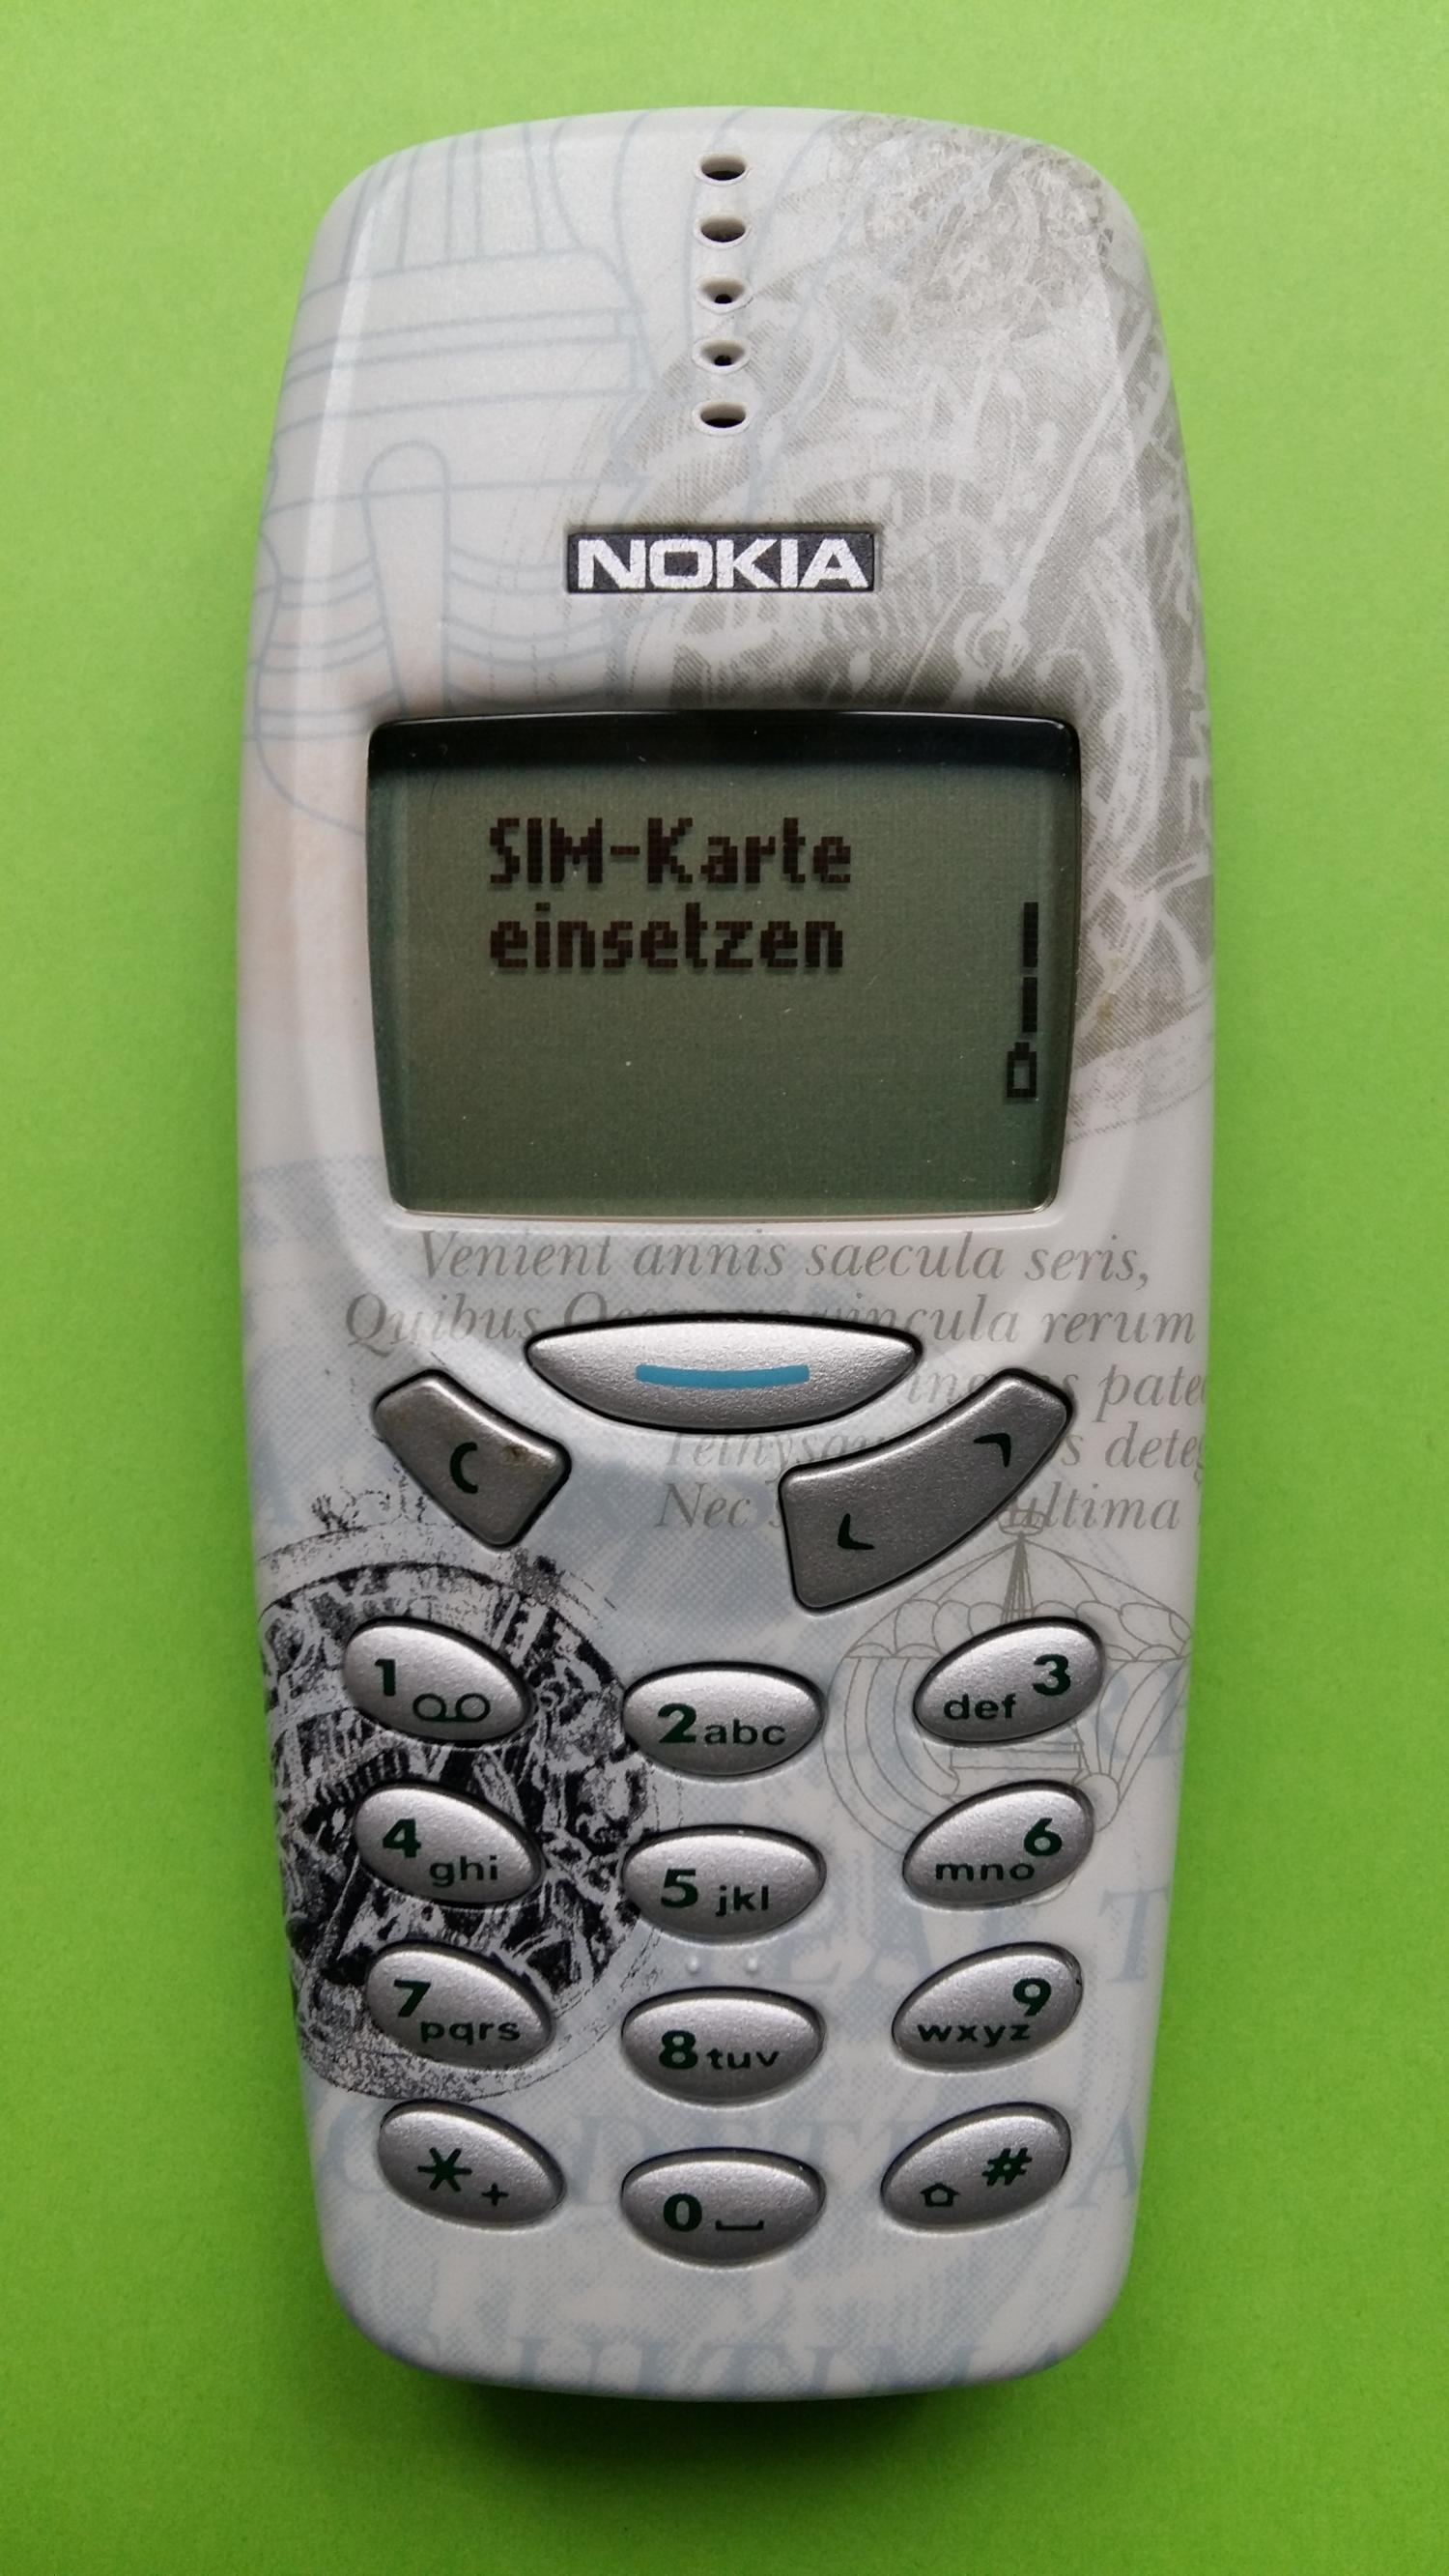 image-7306284-Nokia 3310 (22)1.jpg